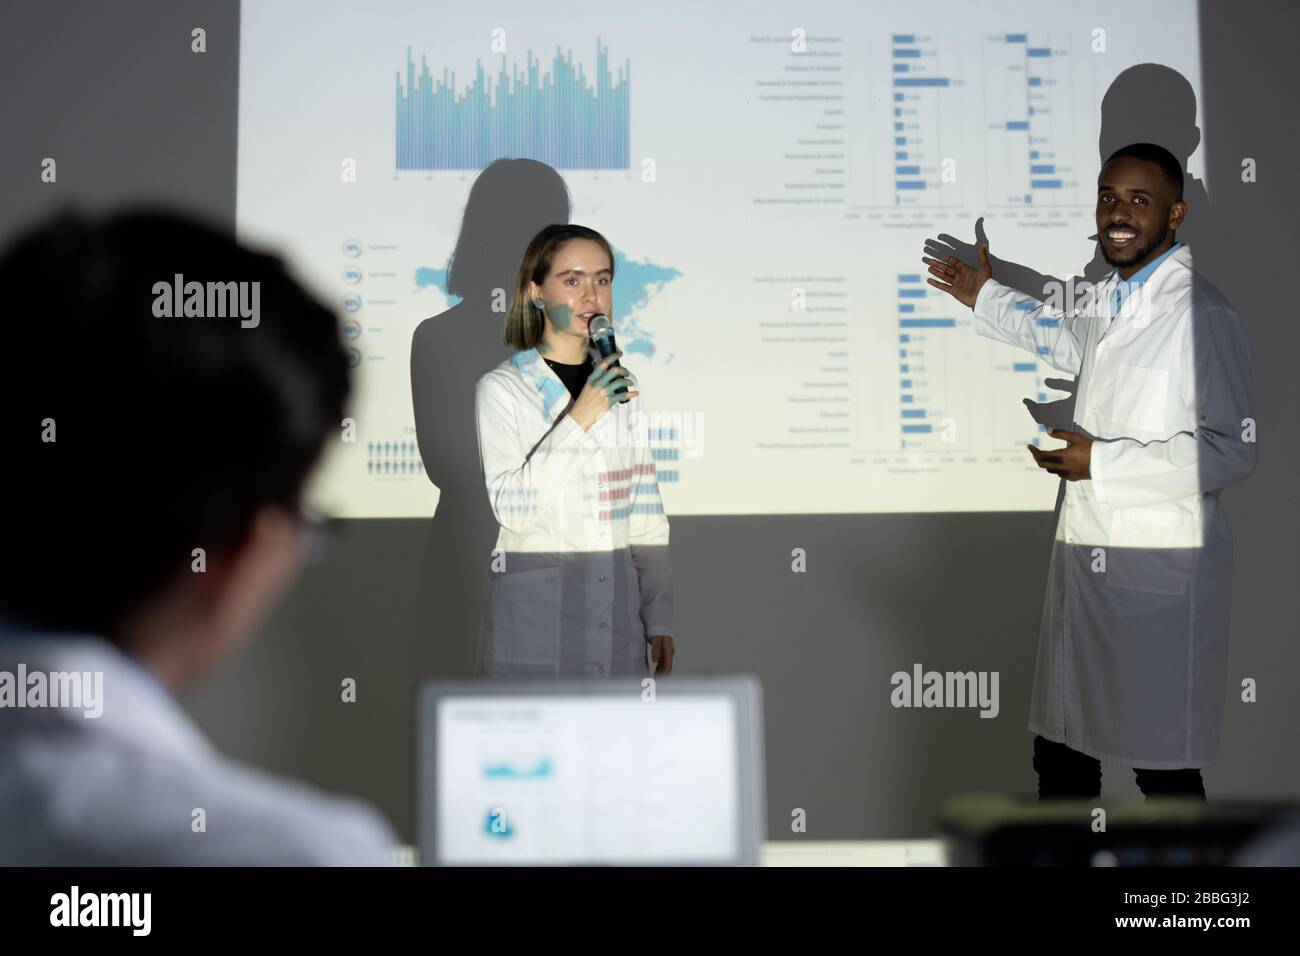 Des stagiaires multiethniques entreprenants dans des blouses de laboratoire présentant des informations médicales à l'aide d'un écran de projection lors d'une conférence scientifique Banque D'Images